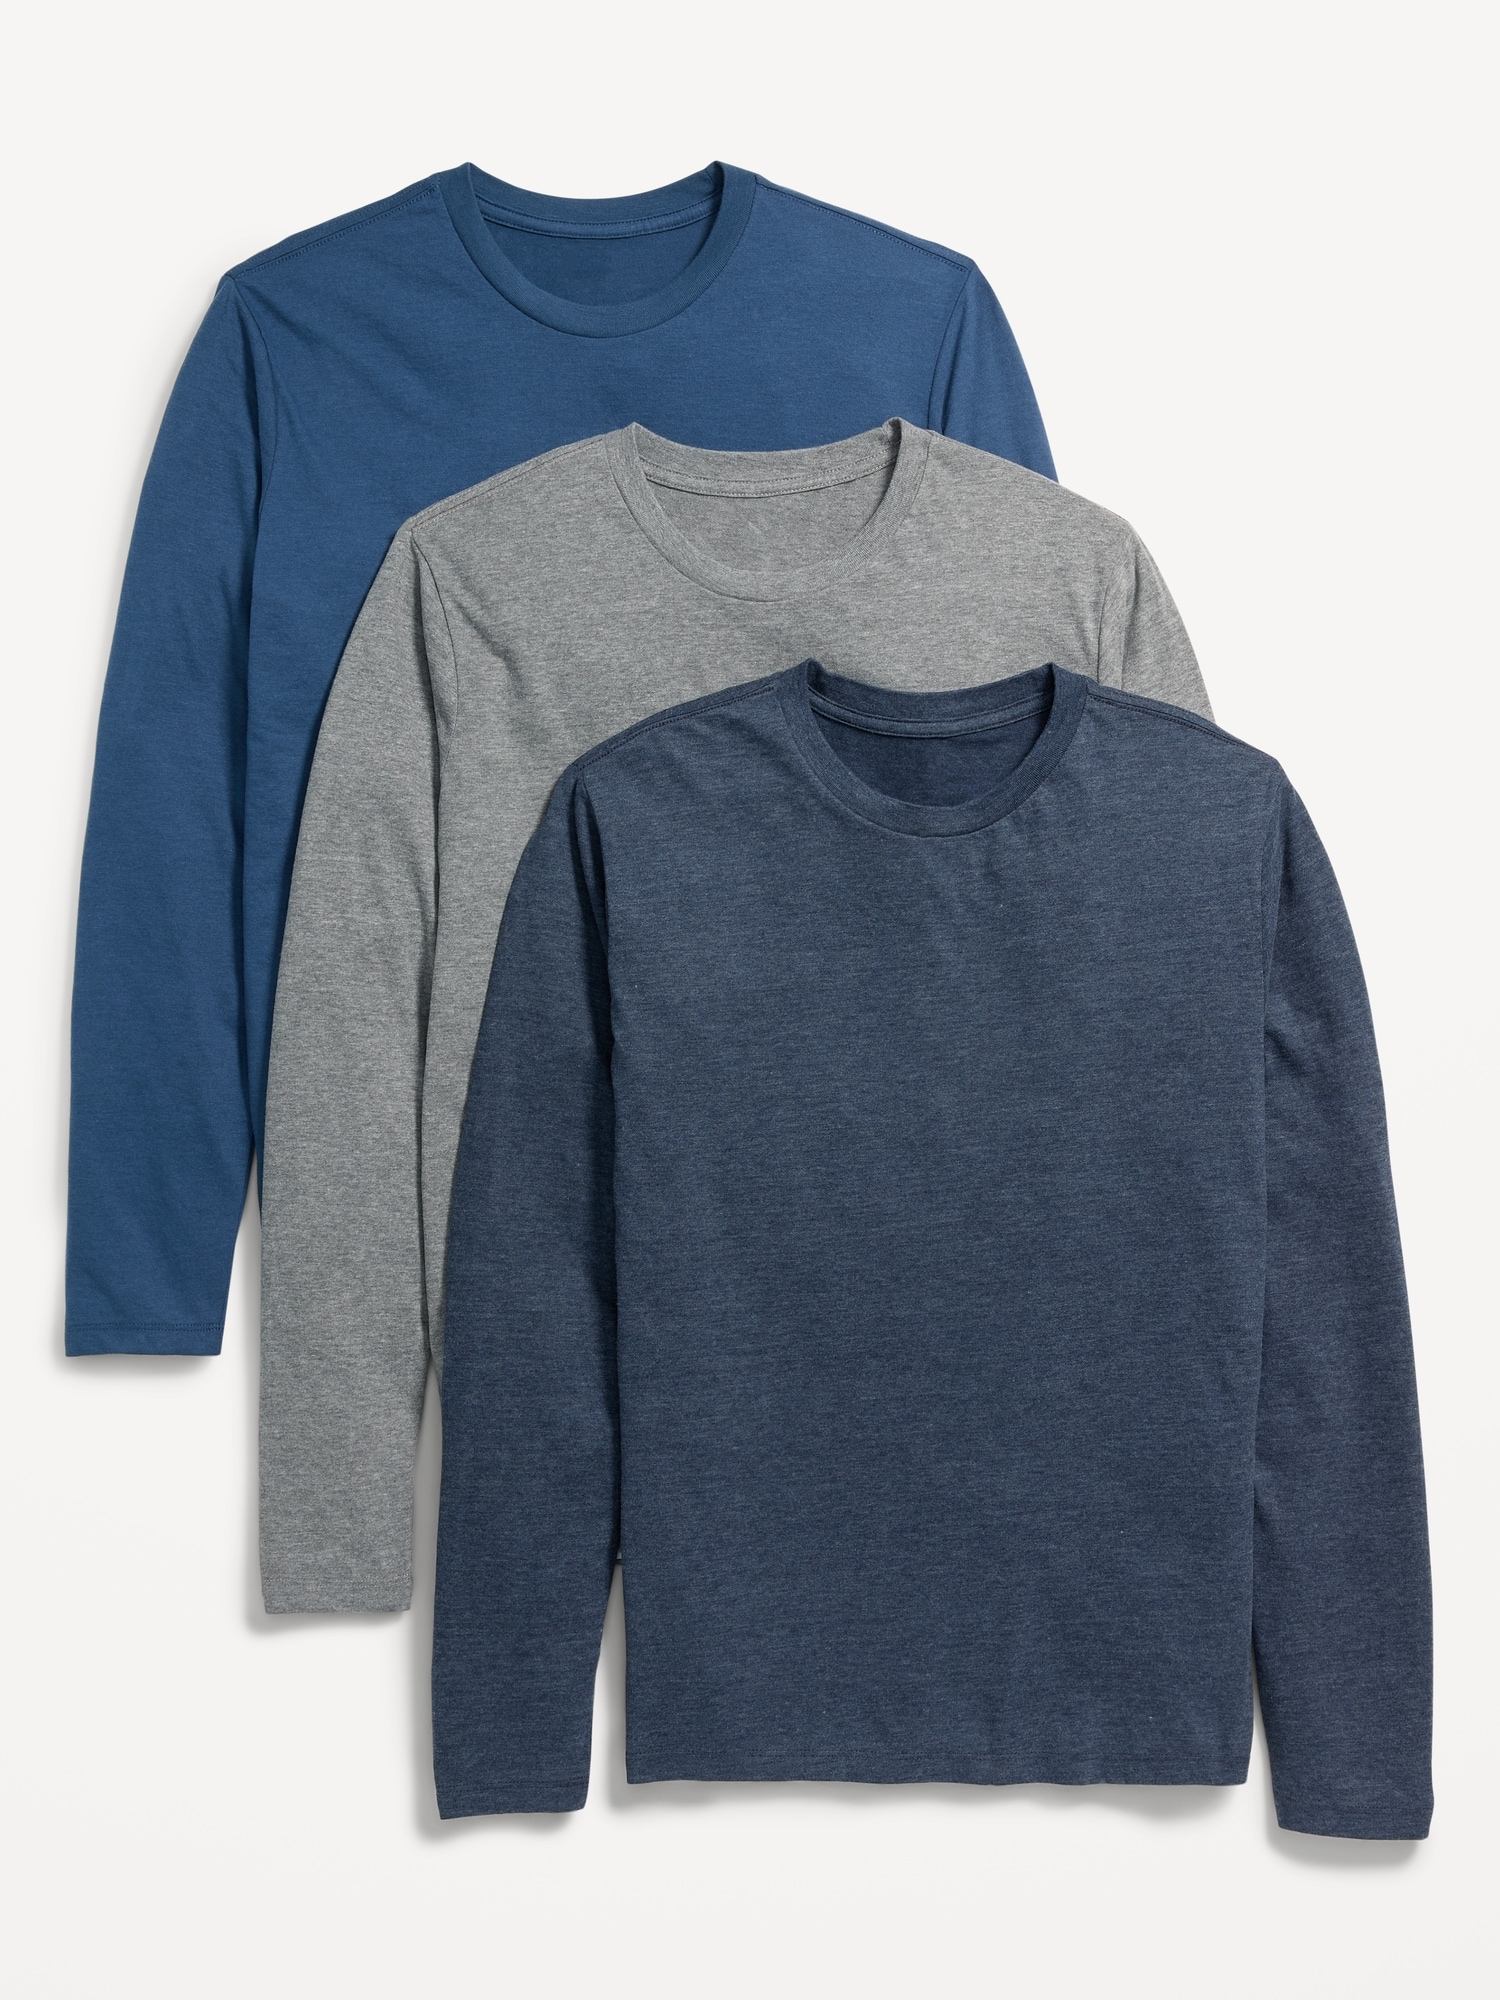 Soft-Washed Curved-Hem T-Shirt 3-Pack